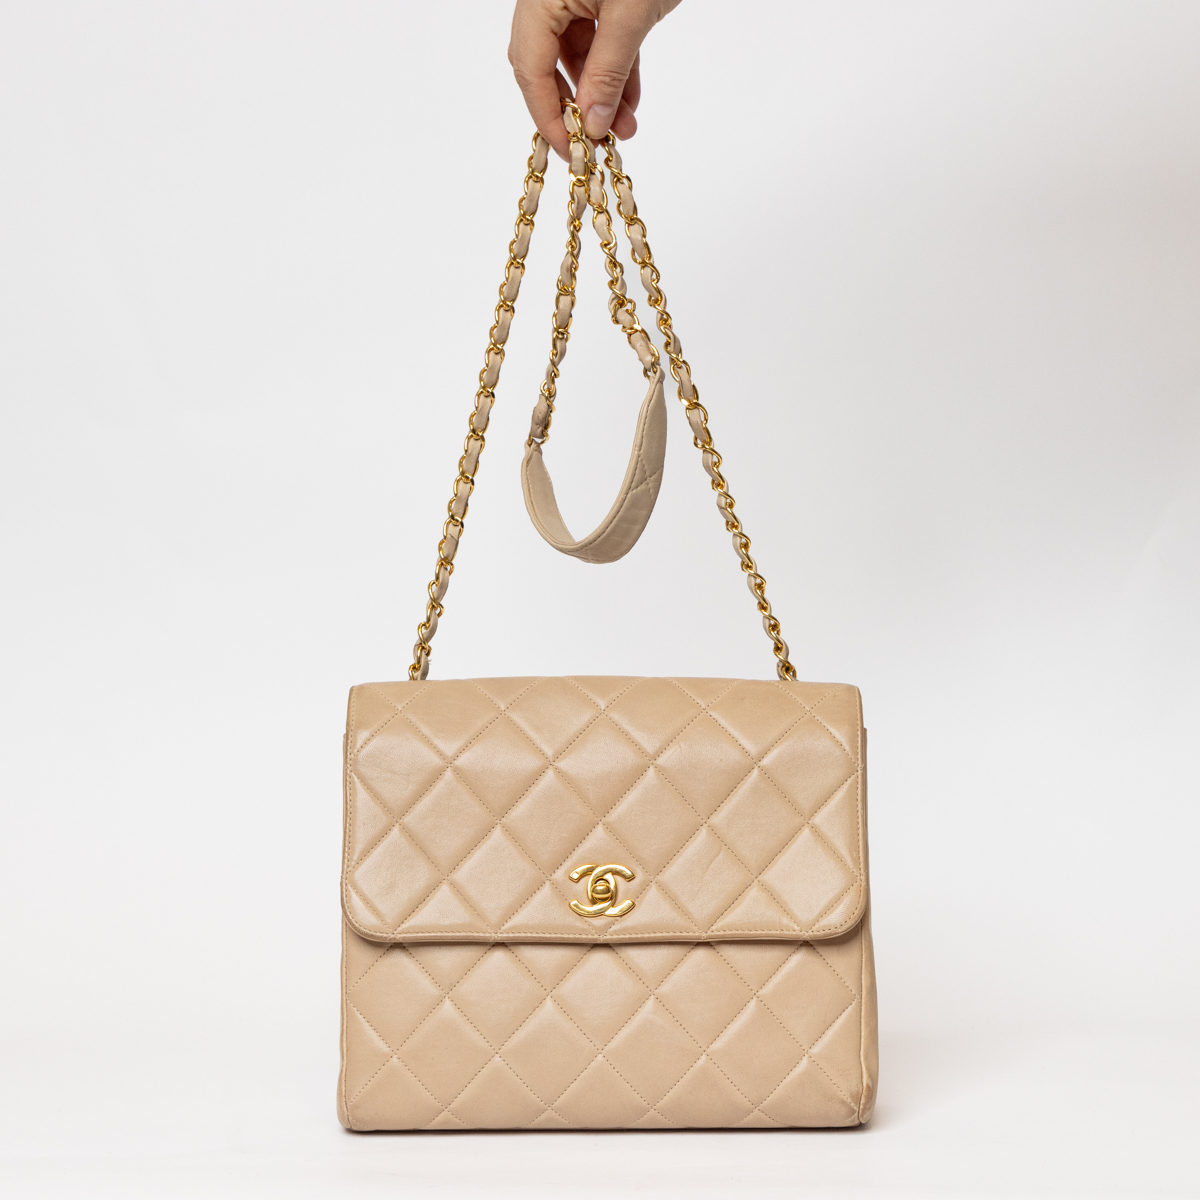 Chanel Timeless Single Flap Bag Lambskin Beige GHW